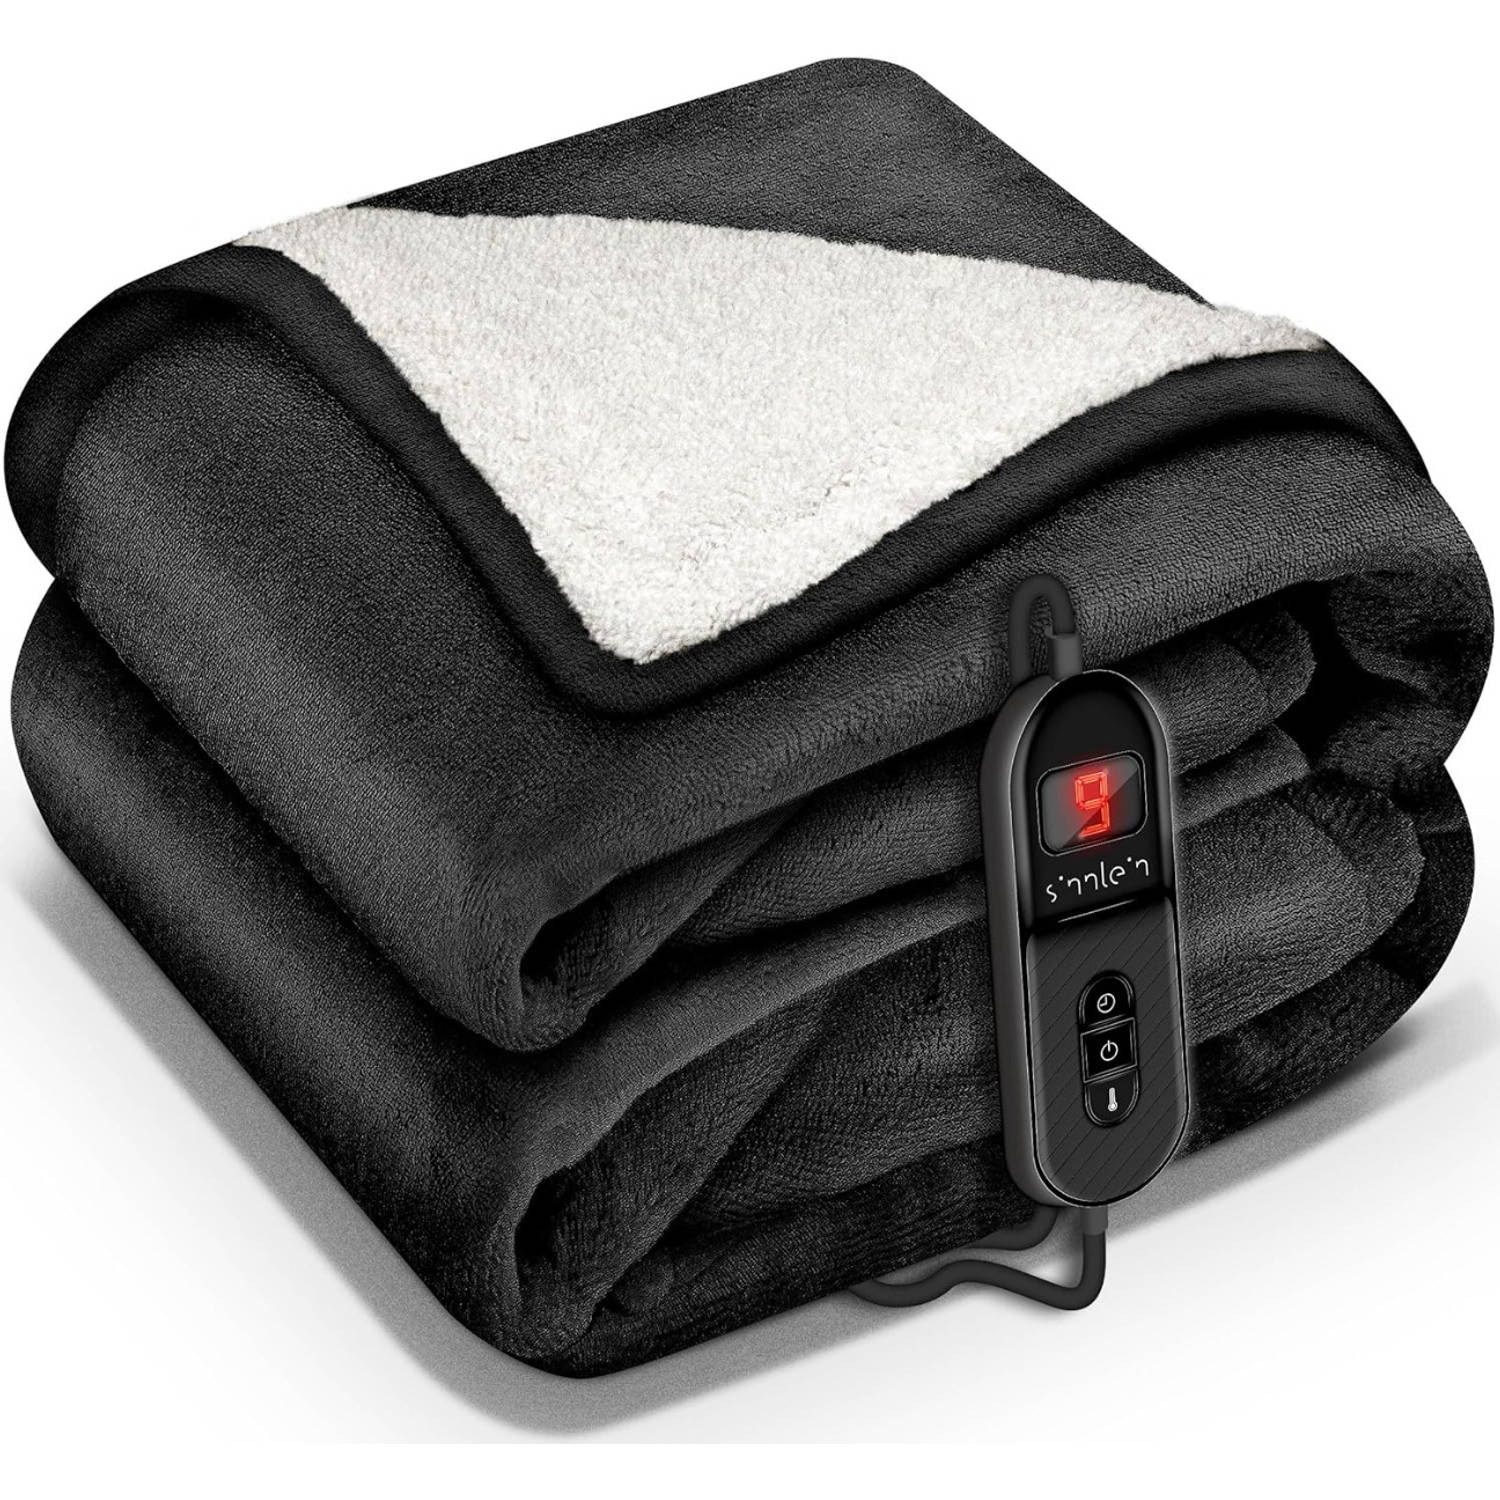 Sinnlein- Elektrische deken met automatische uitschakeling, zwart, 180x130 cm, warmtedeken met 9 tem